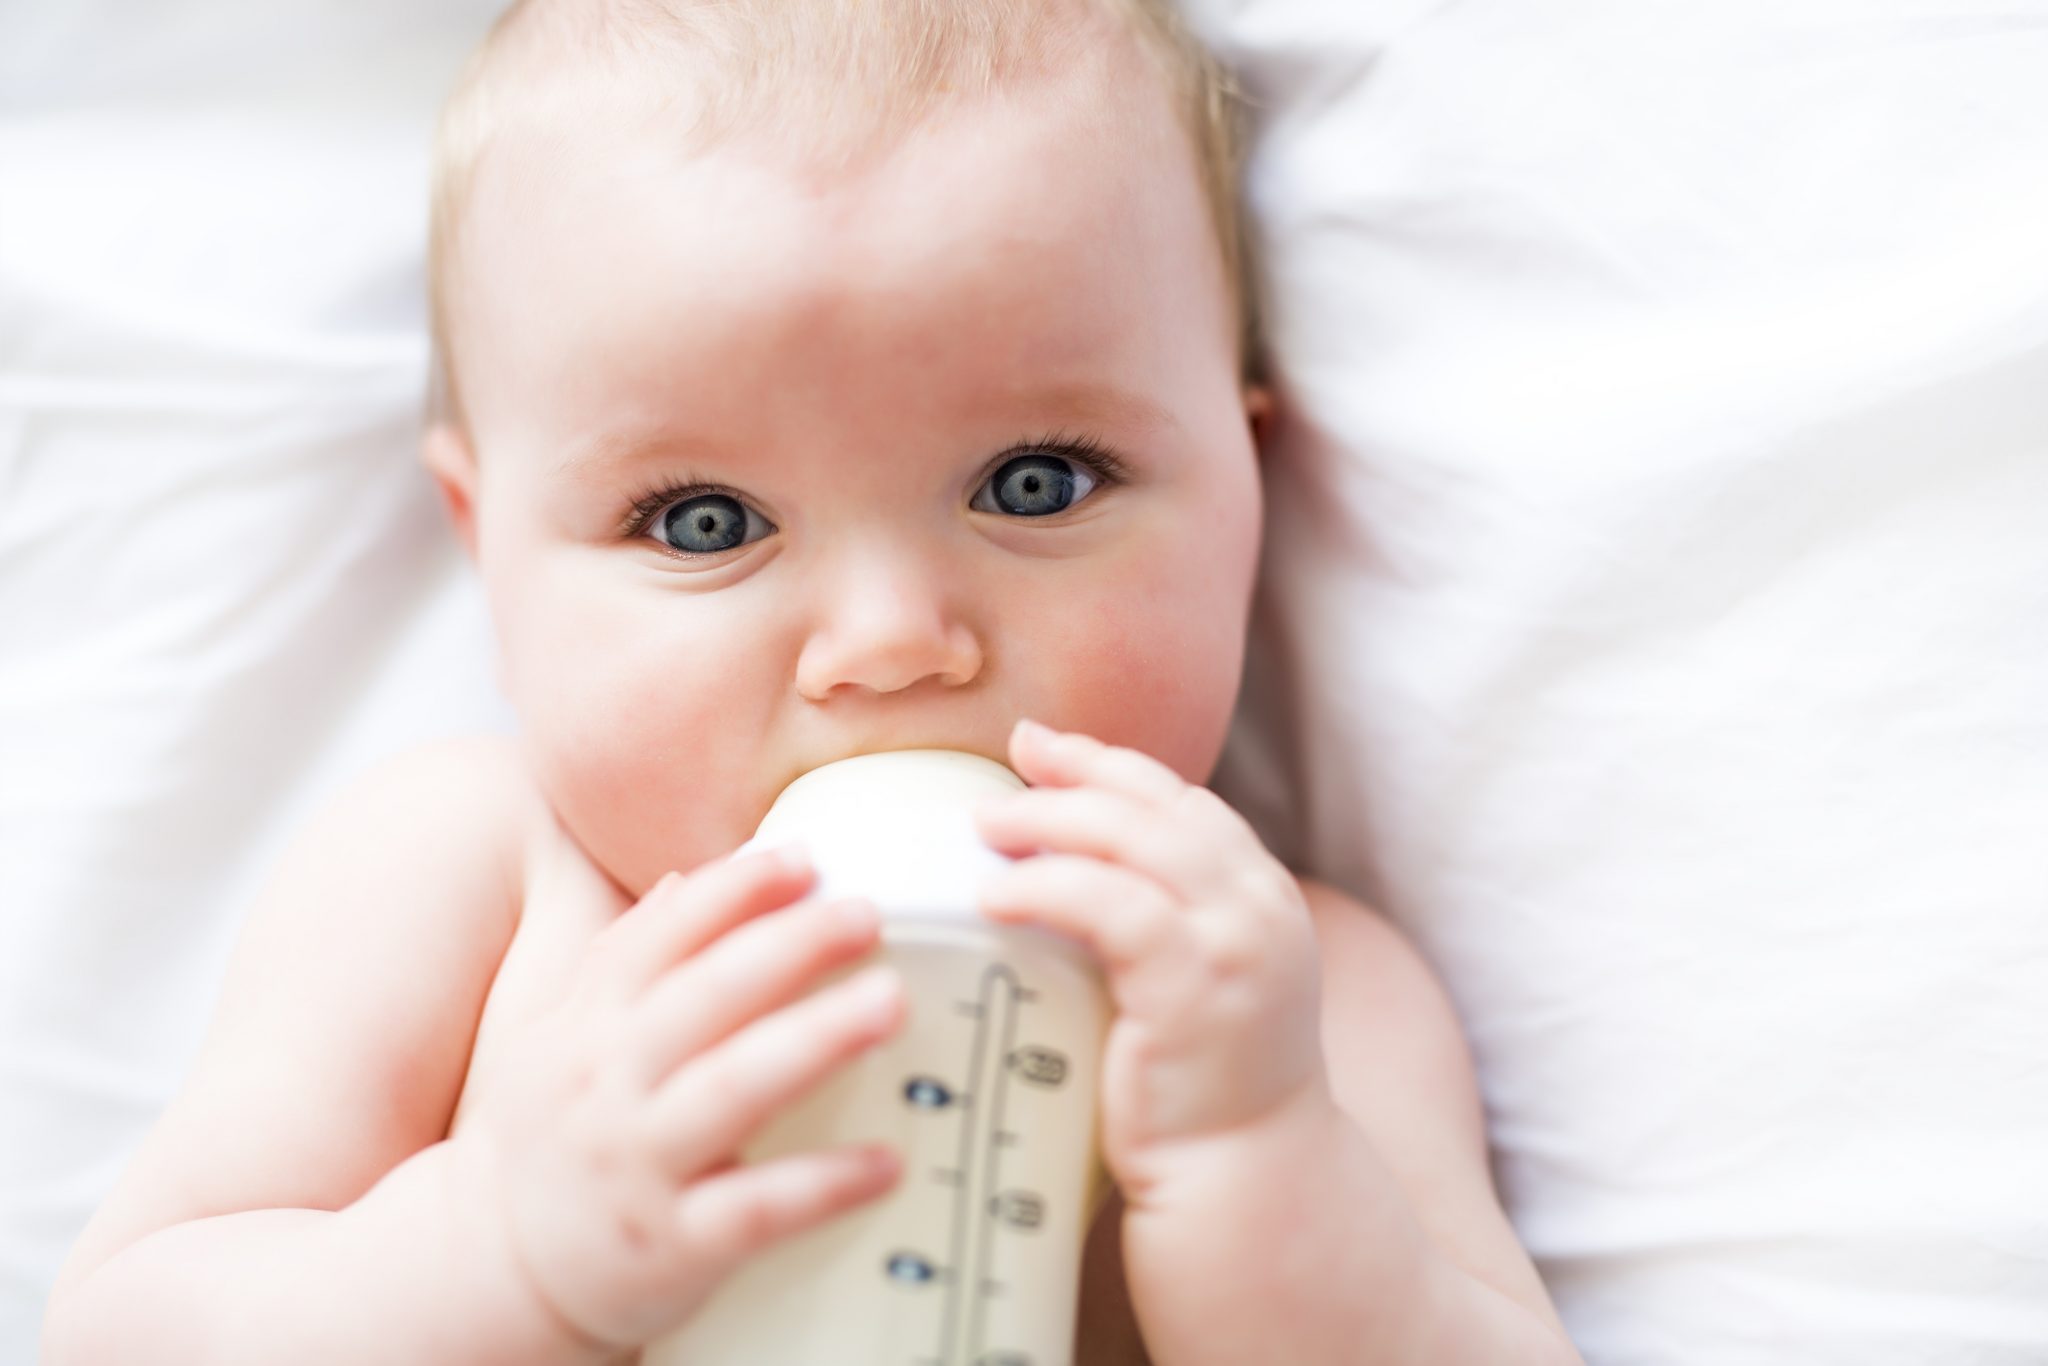 formula feeding after breastfeeding